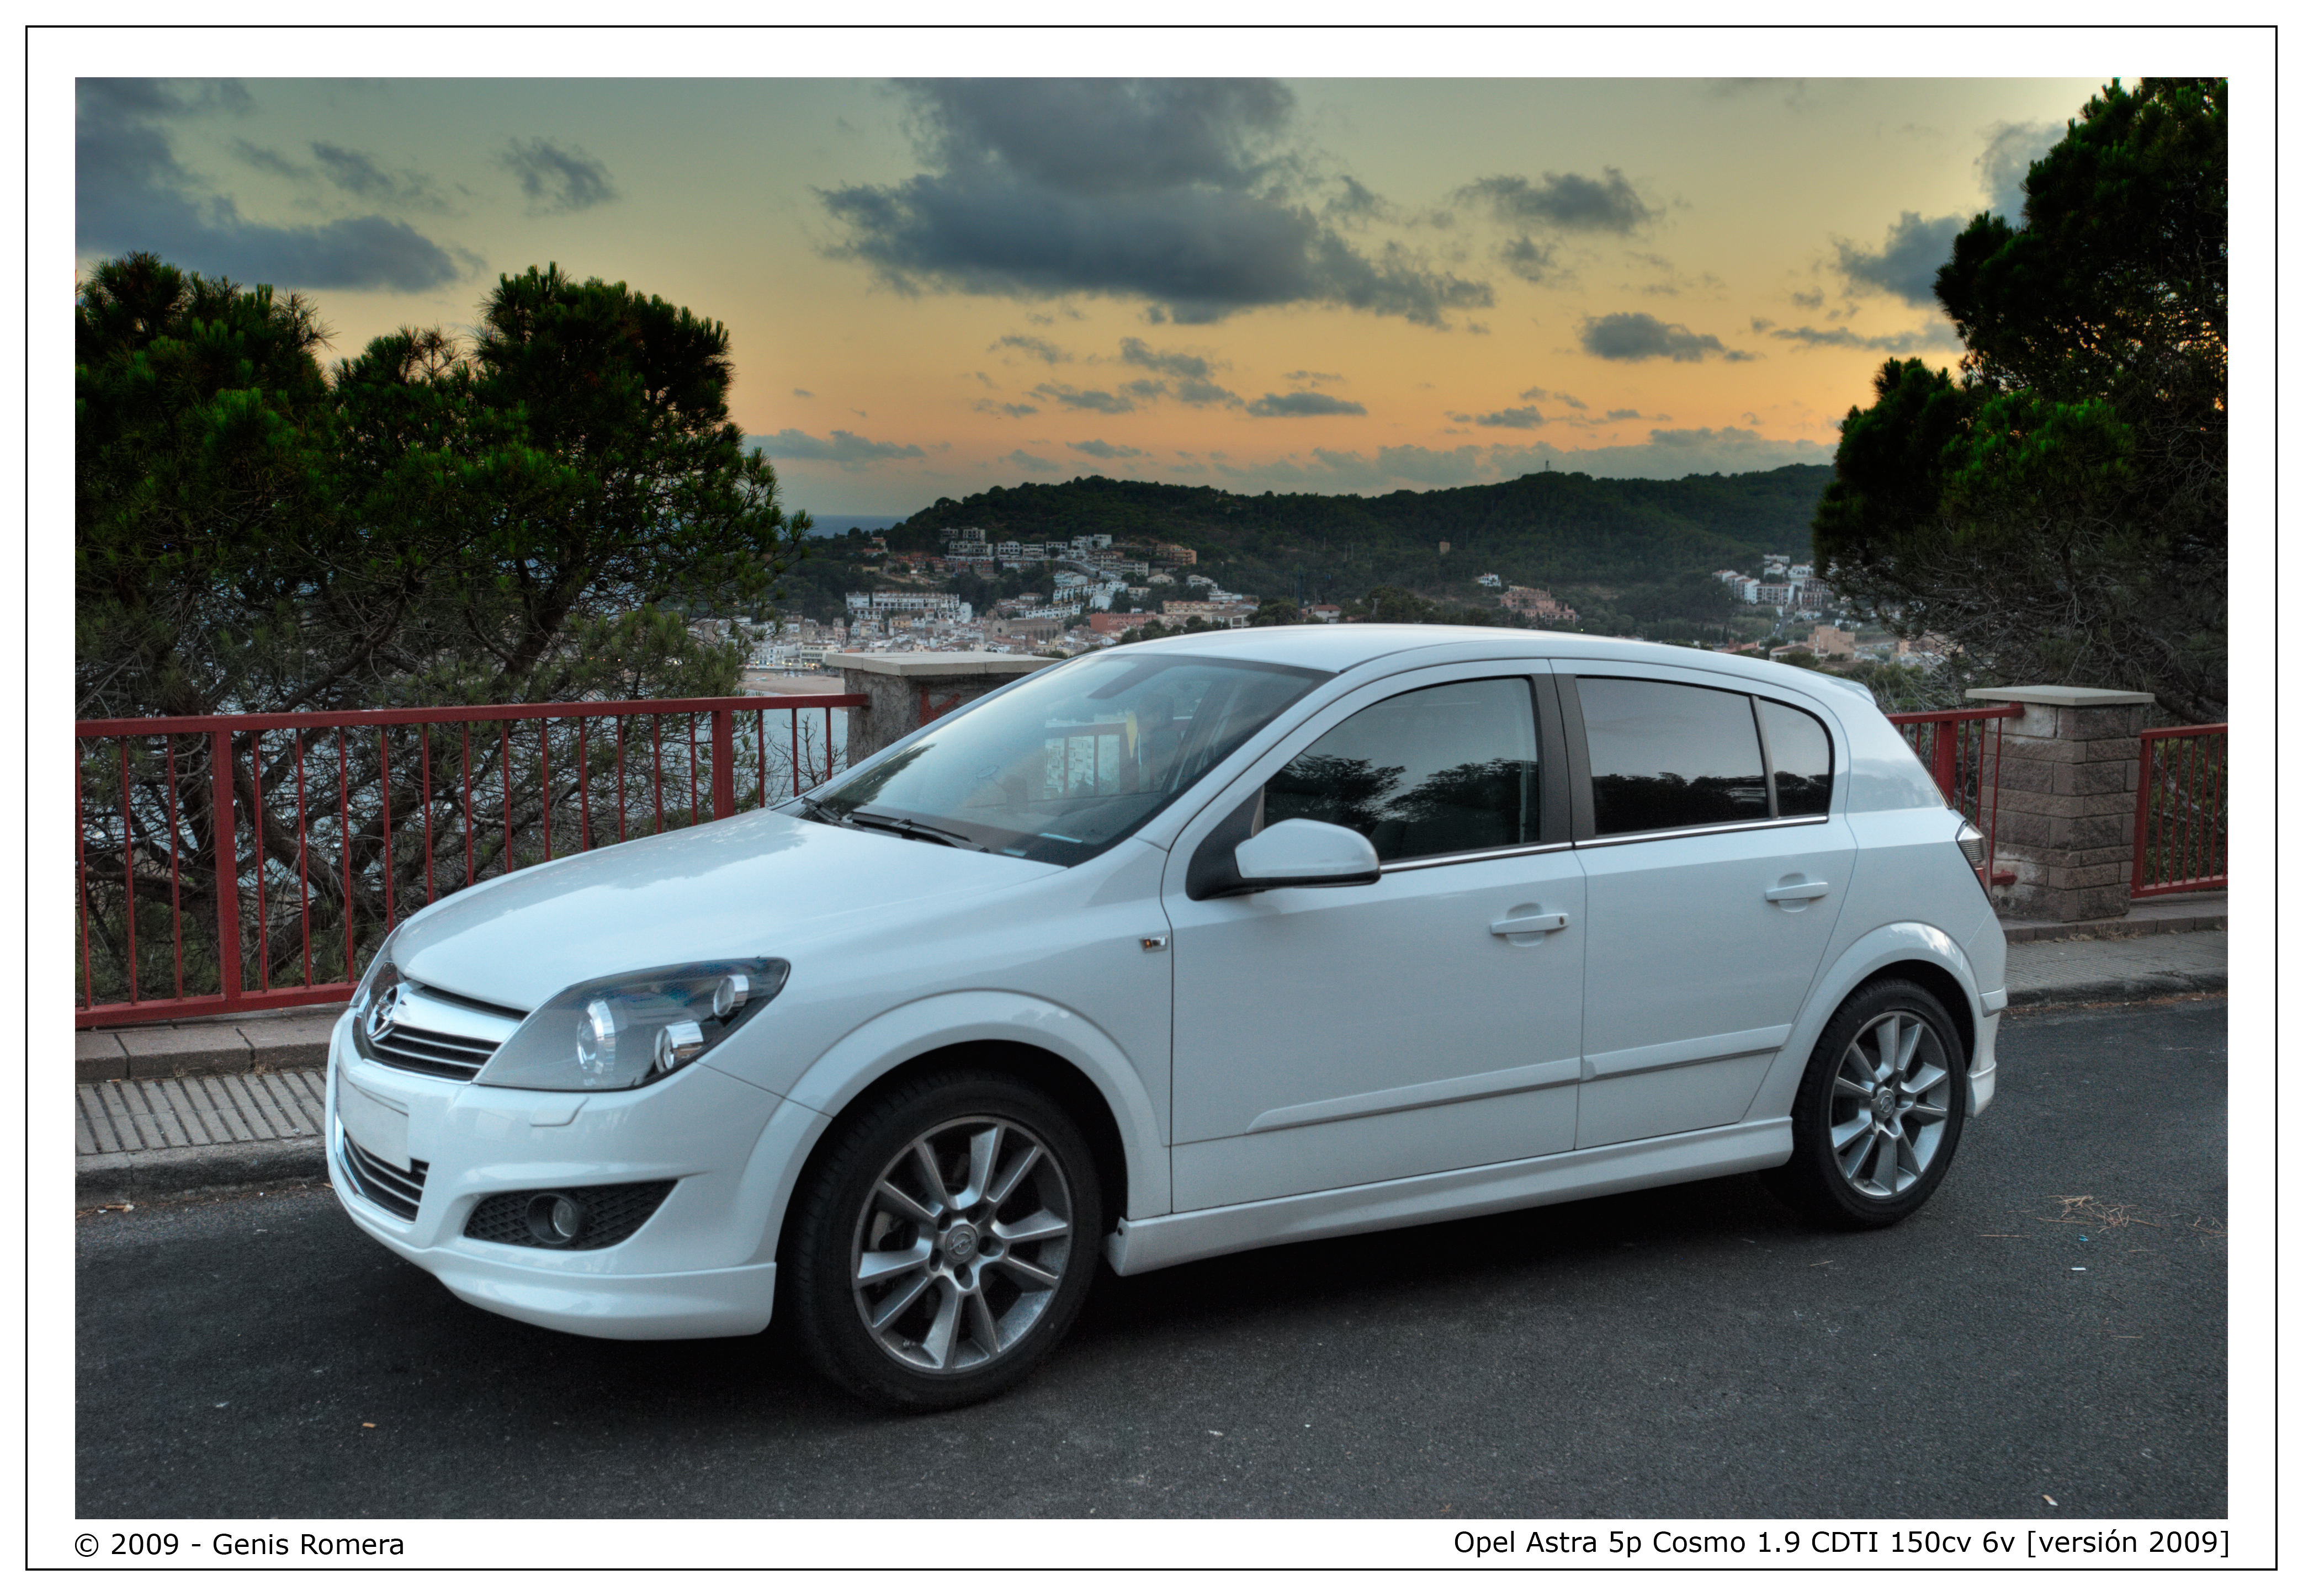 Opel Astra 5p Cosmo 1.9 CDTI 150cv 6v 2009 | Flickr - Photo Sharing!